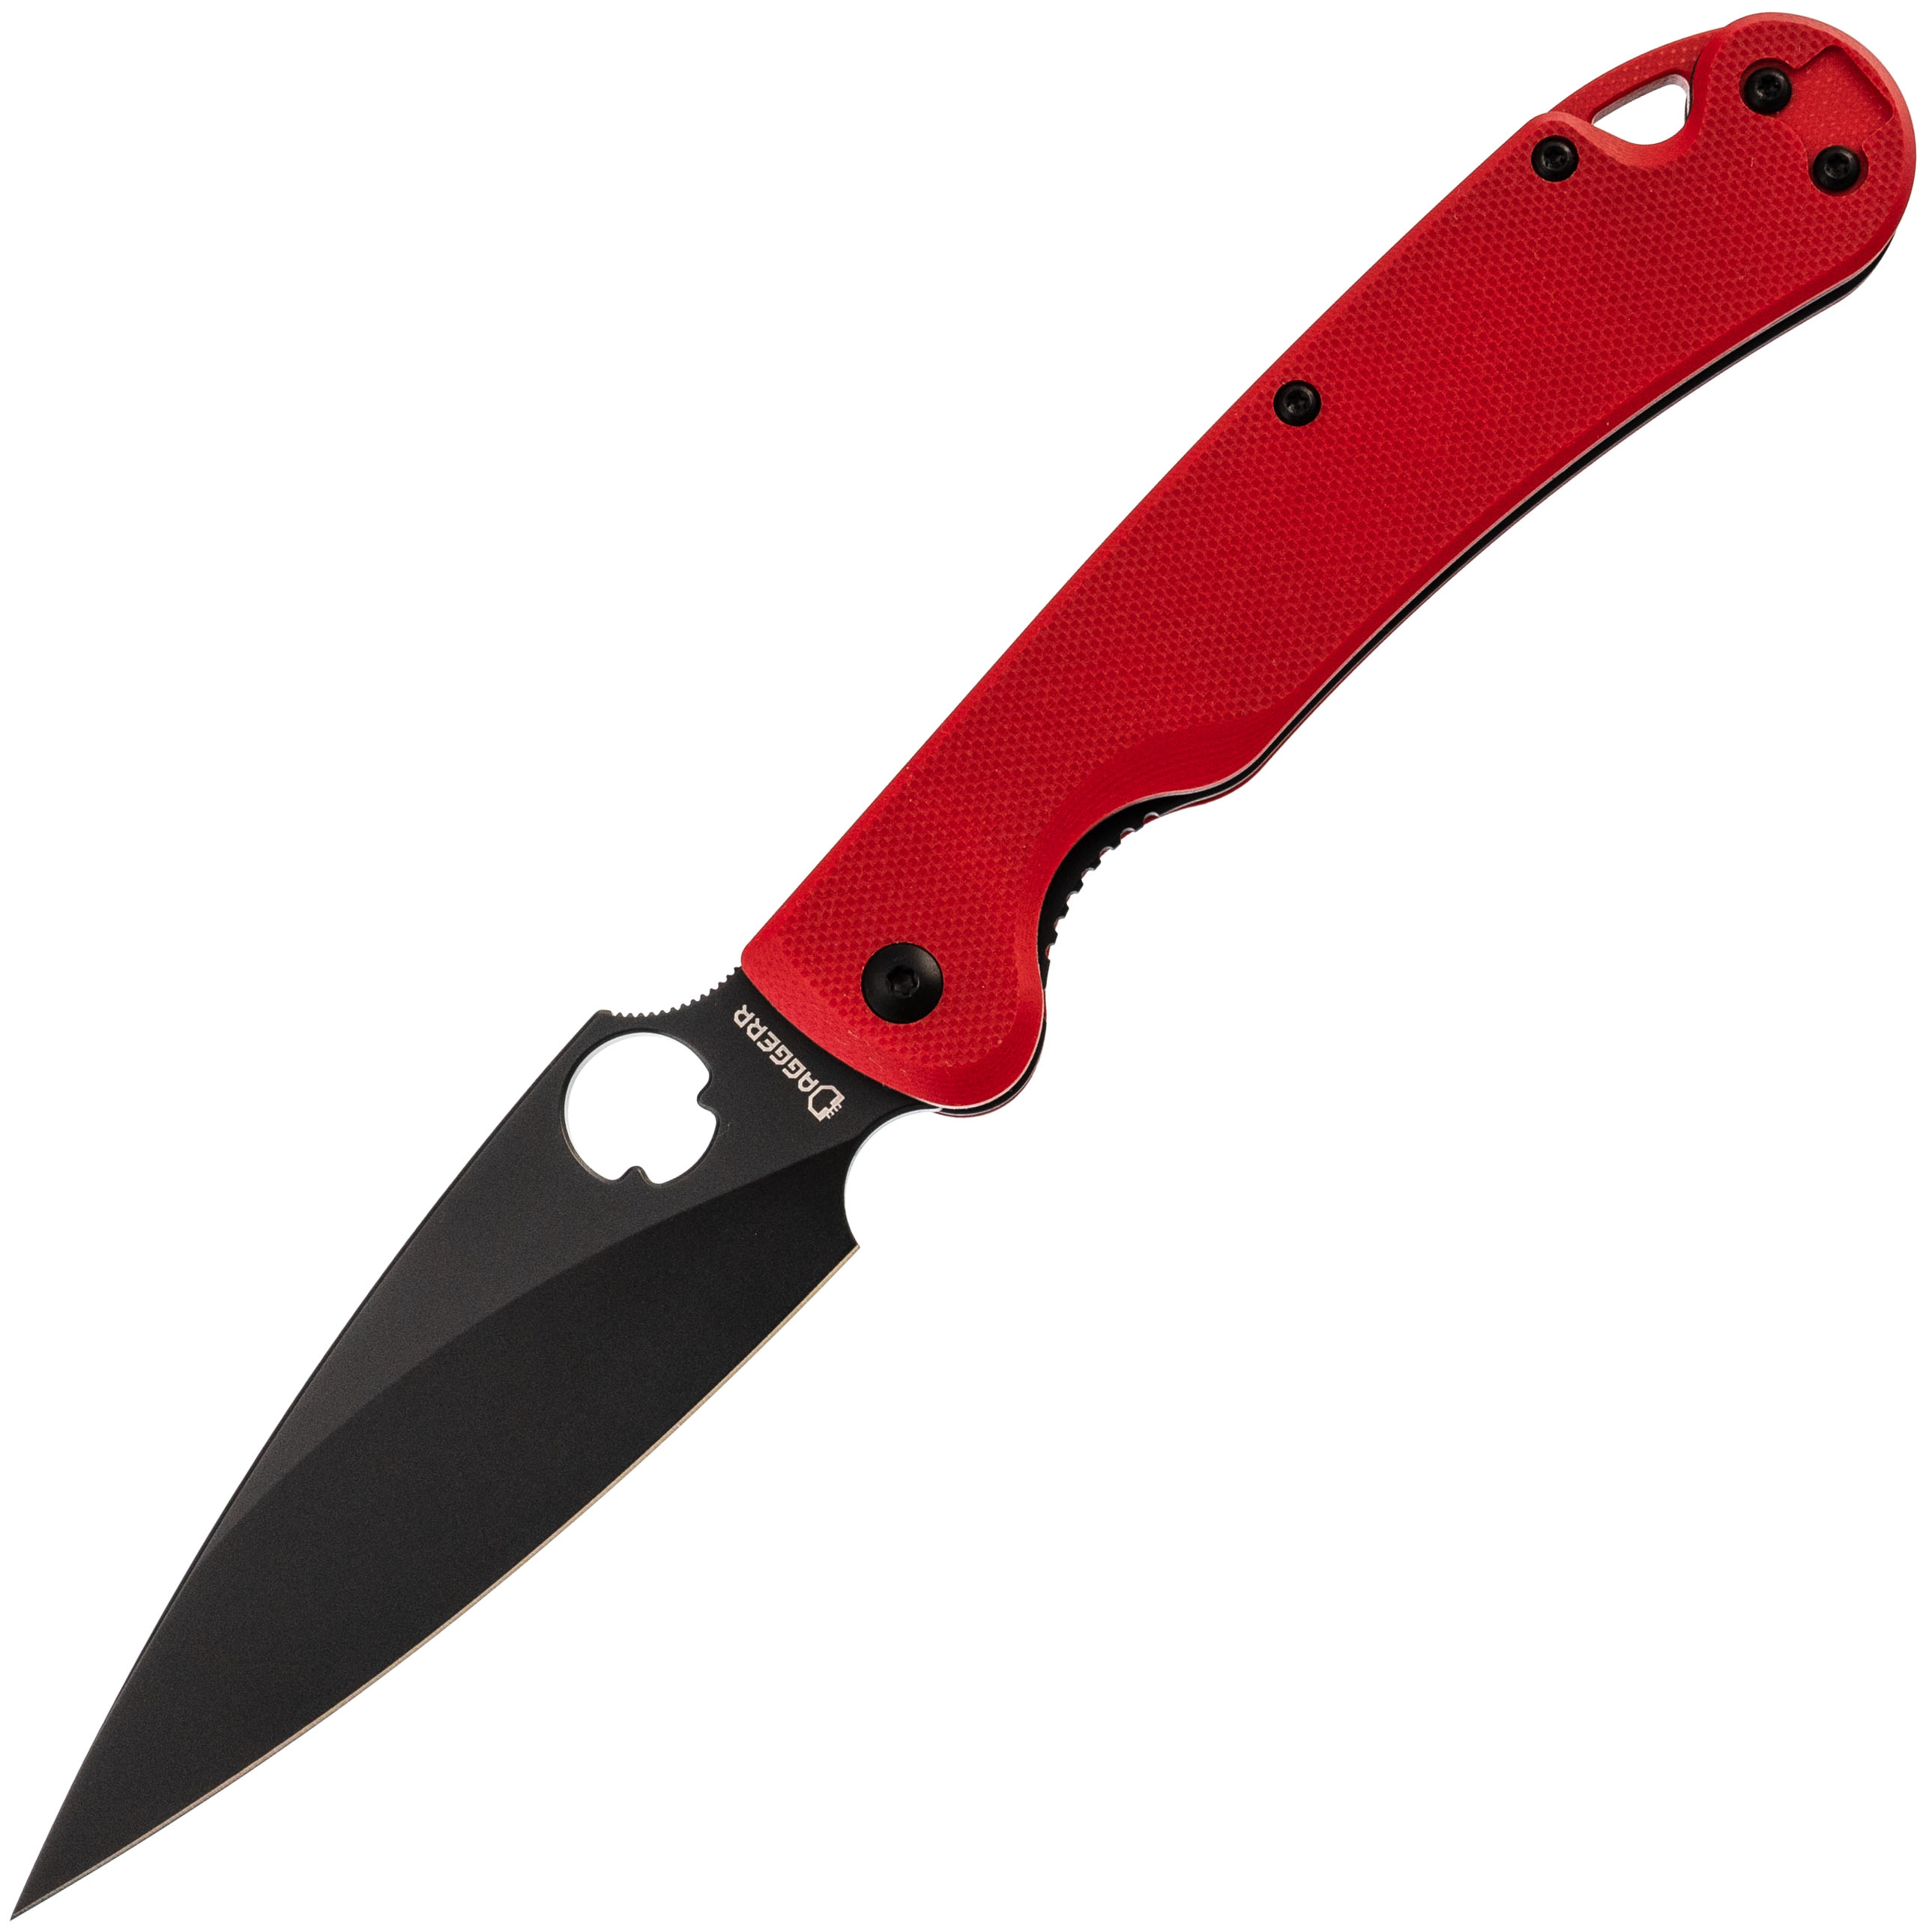 Складной нож Daggerr Sting Red DLC, сталь D2, рукоять G10, Бренды, DAGGERR